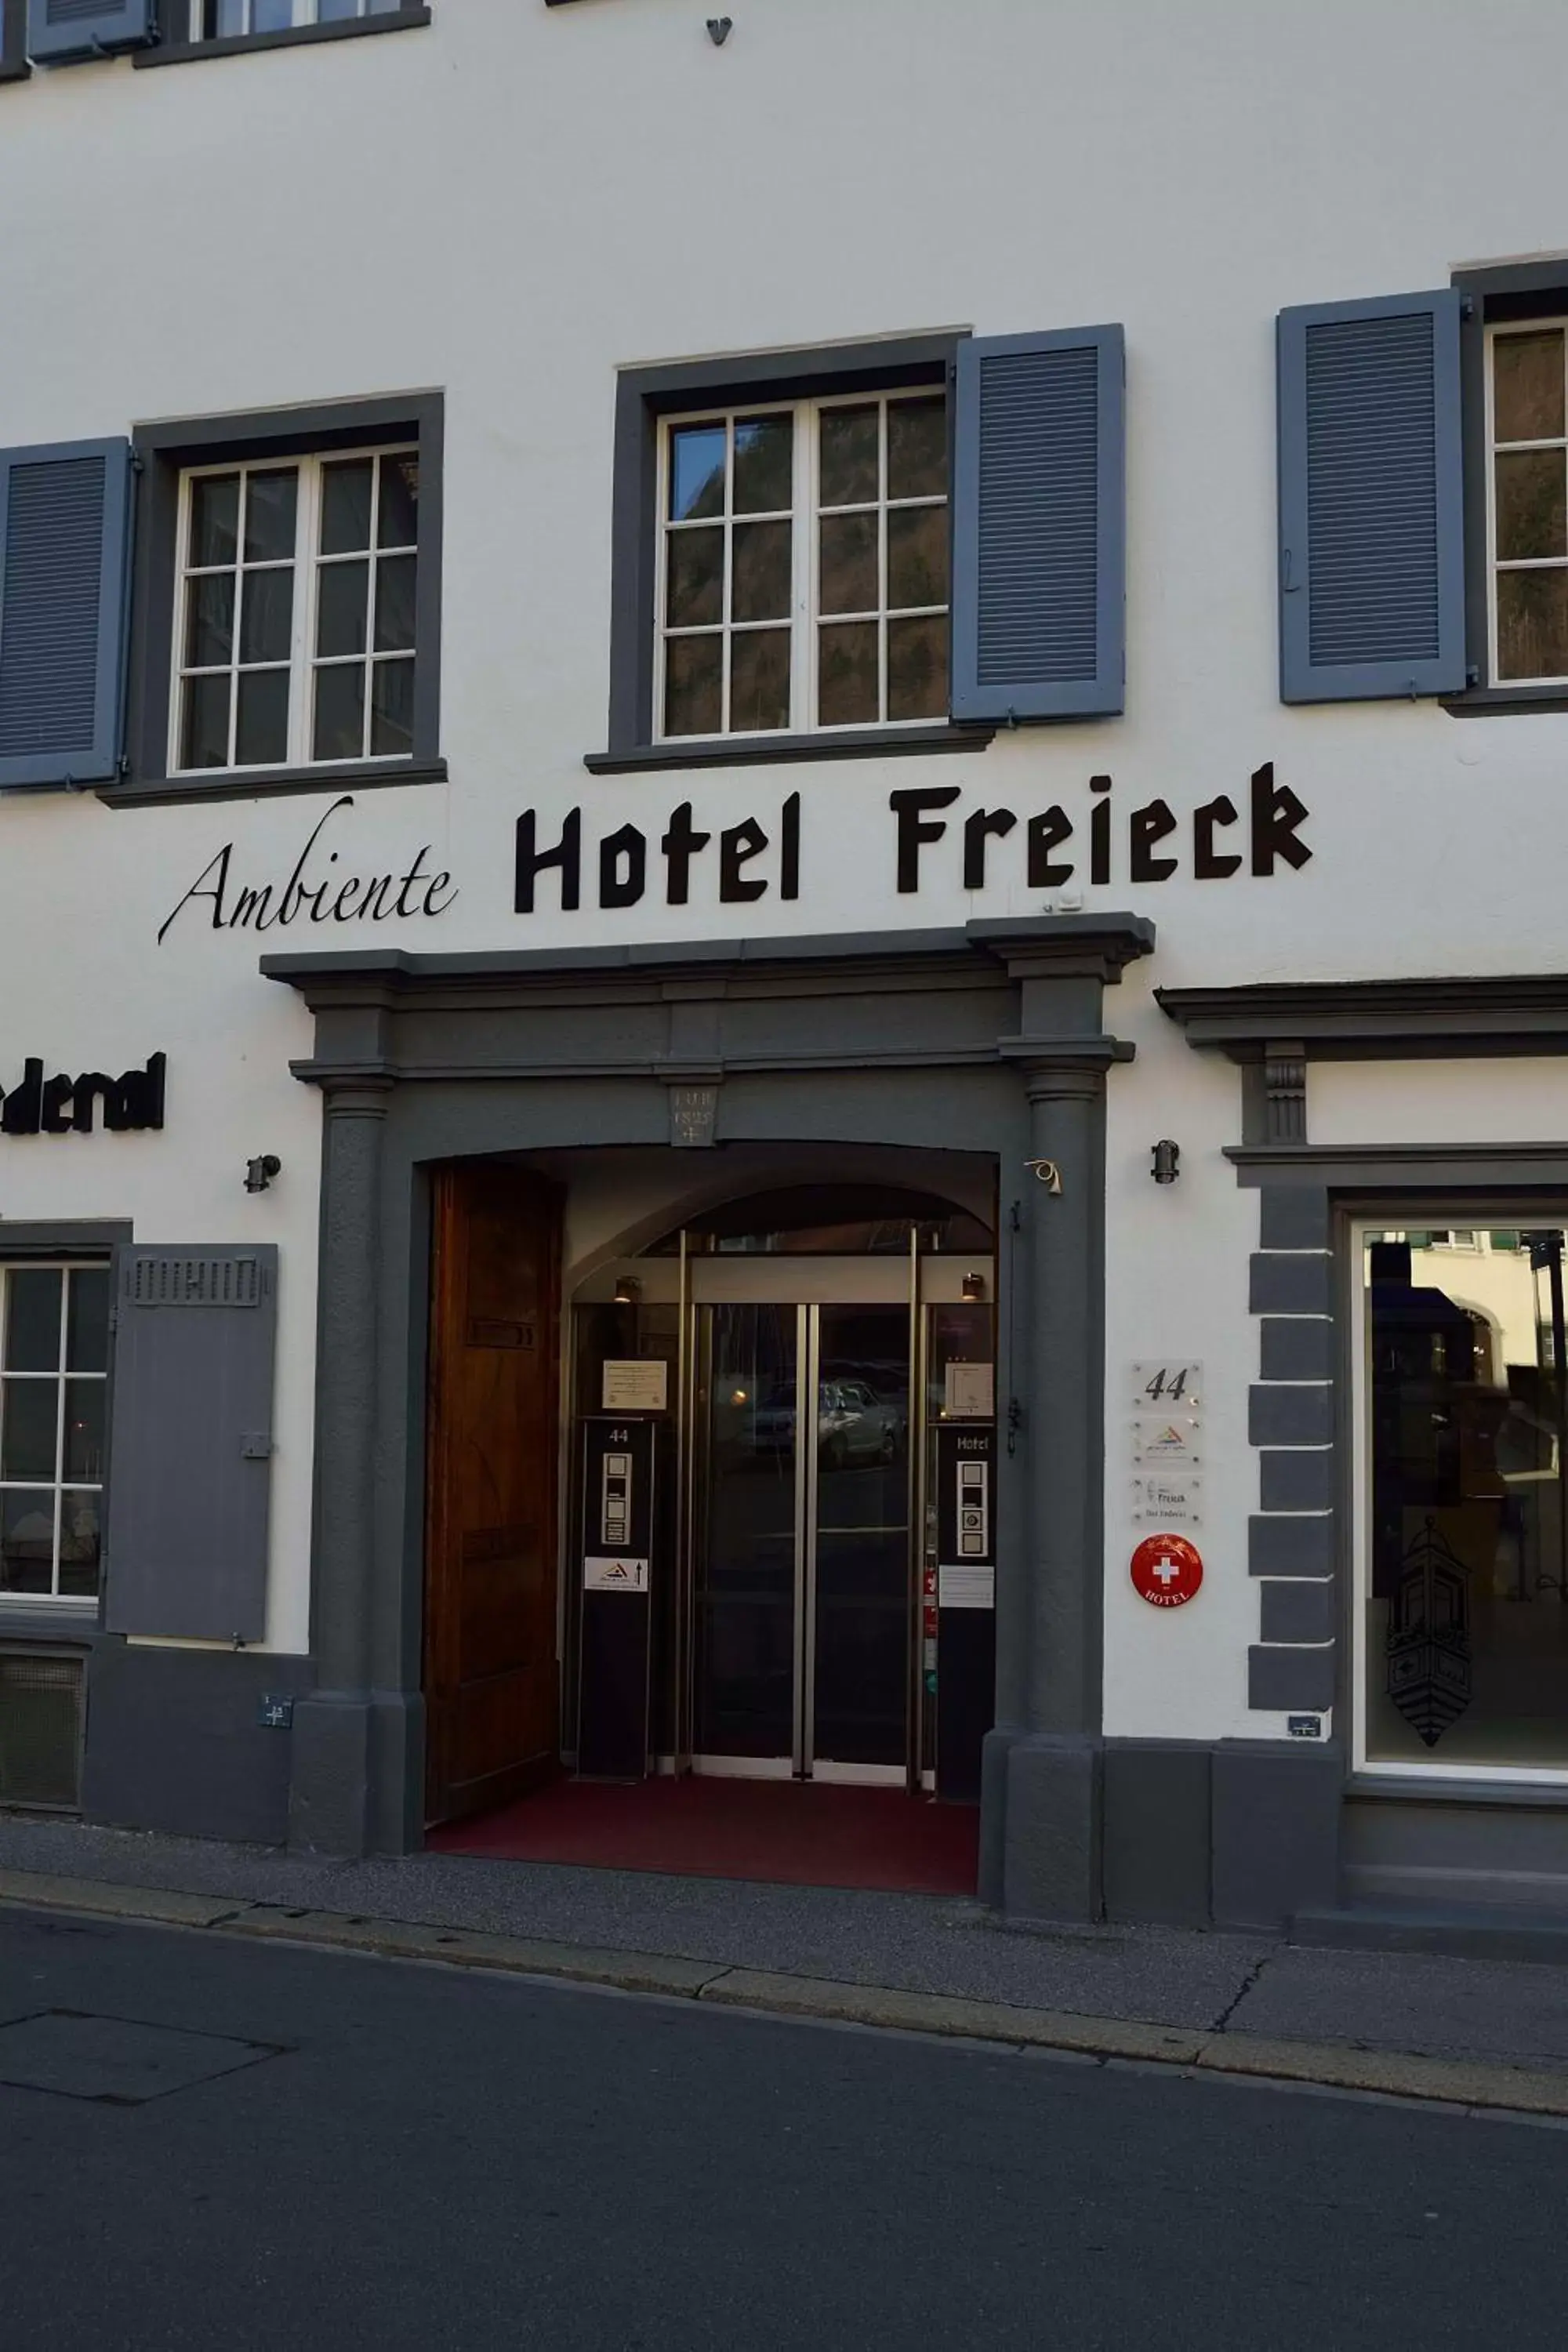 Facade/entrance in Ambiente Hotel Freieck